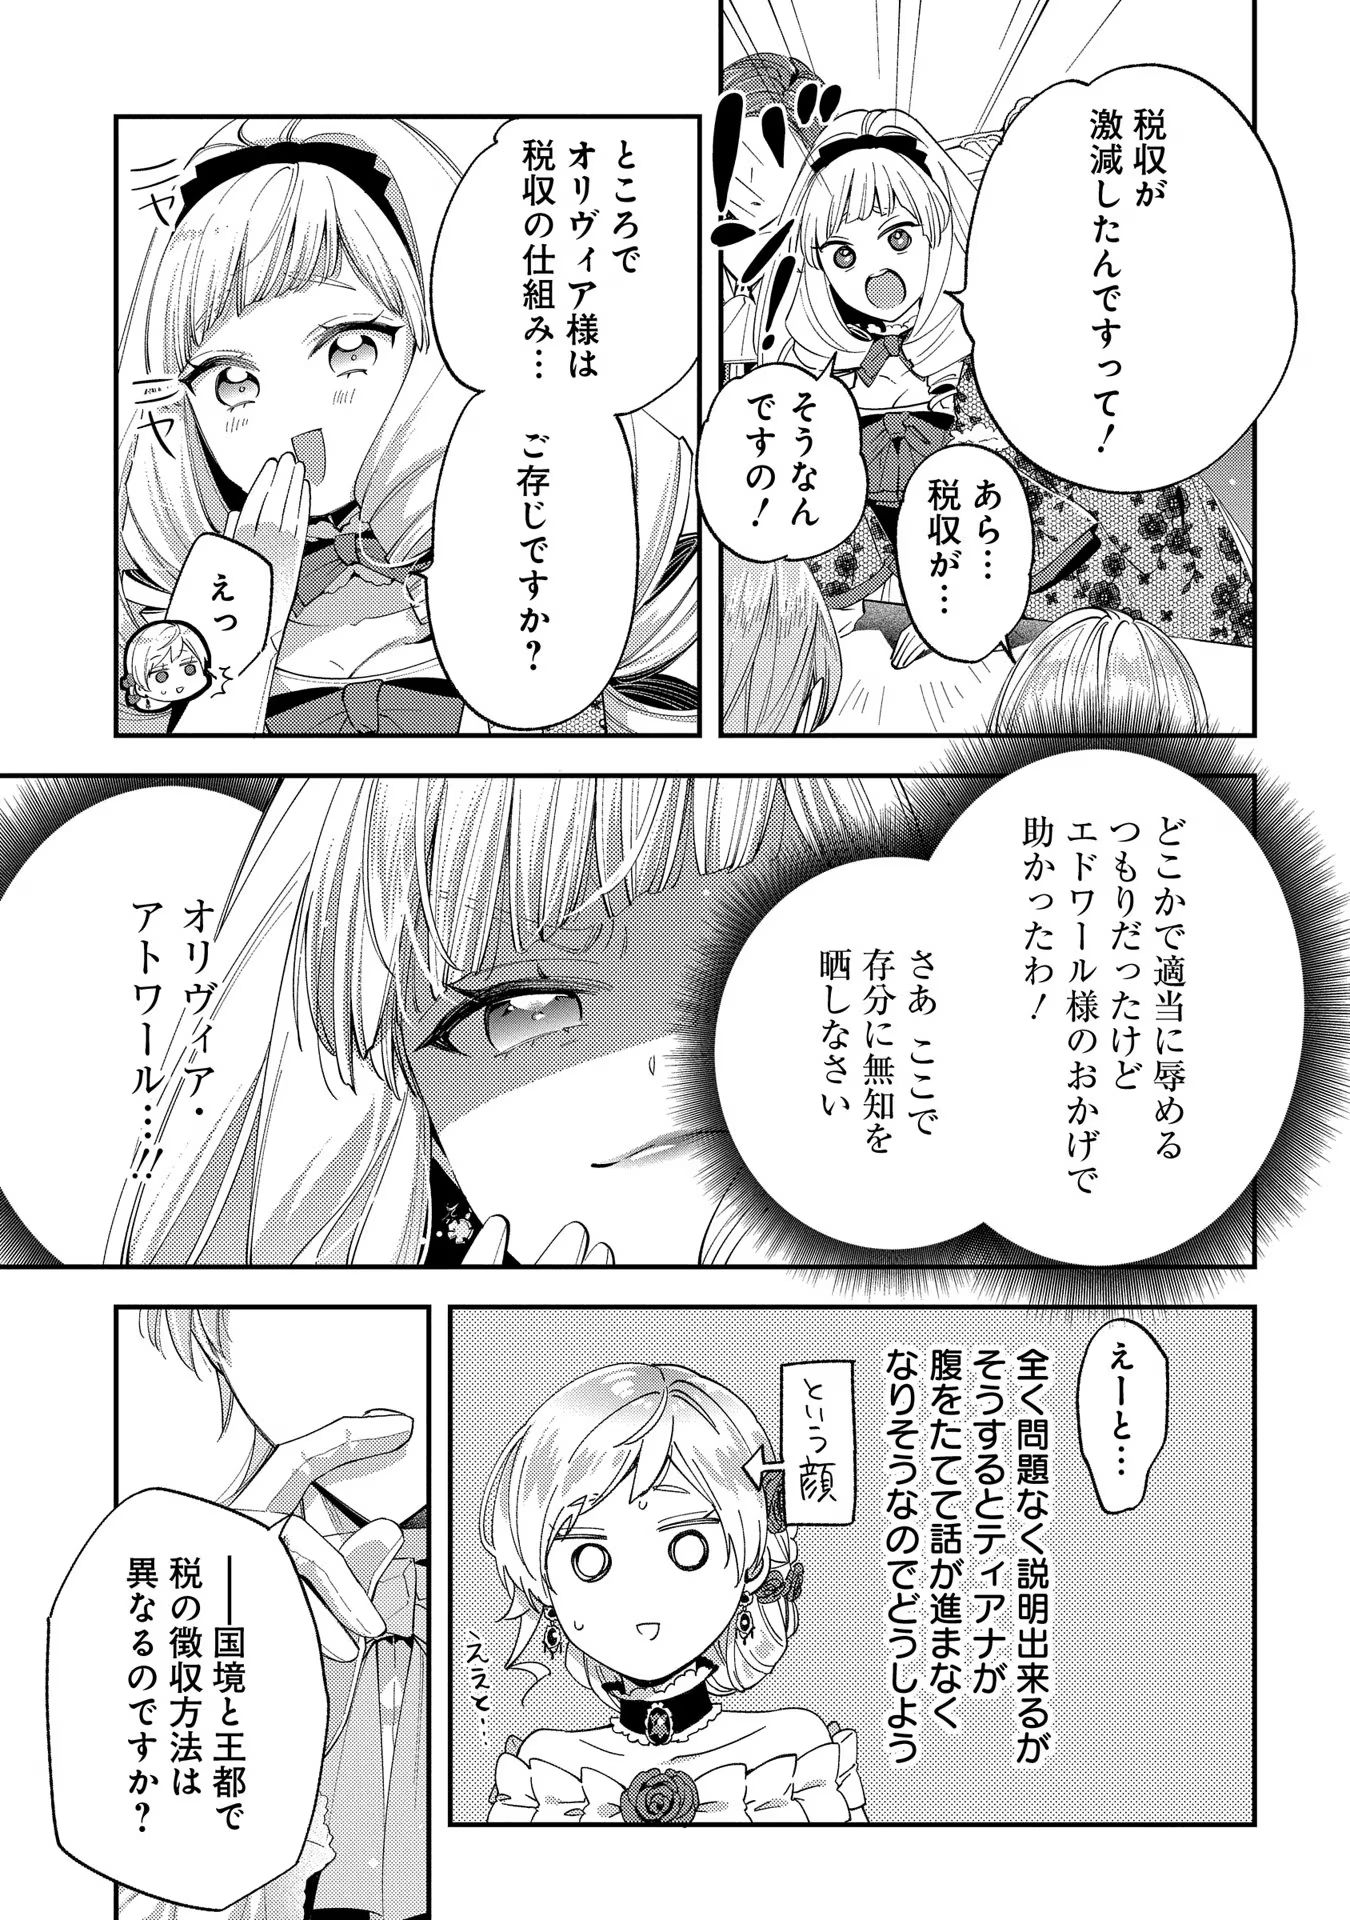 Outaishi ni Konyaku Hakisareta no de, Mou Baka no Furi wa Yameyou to Omoimasu - Chapter 11 - Page 23